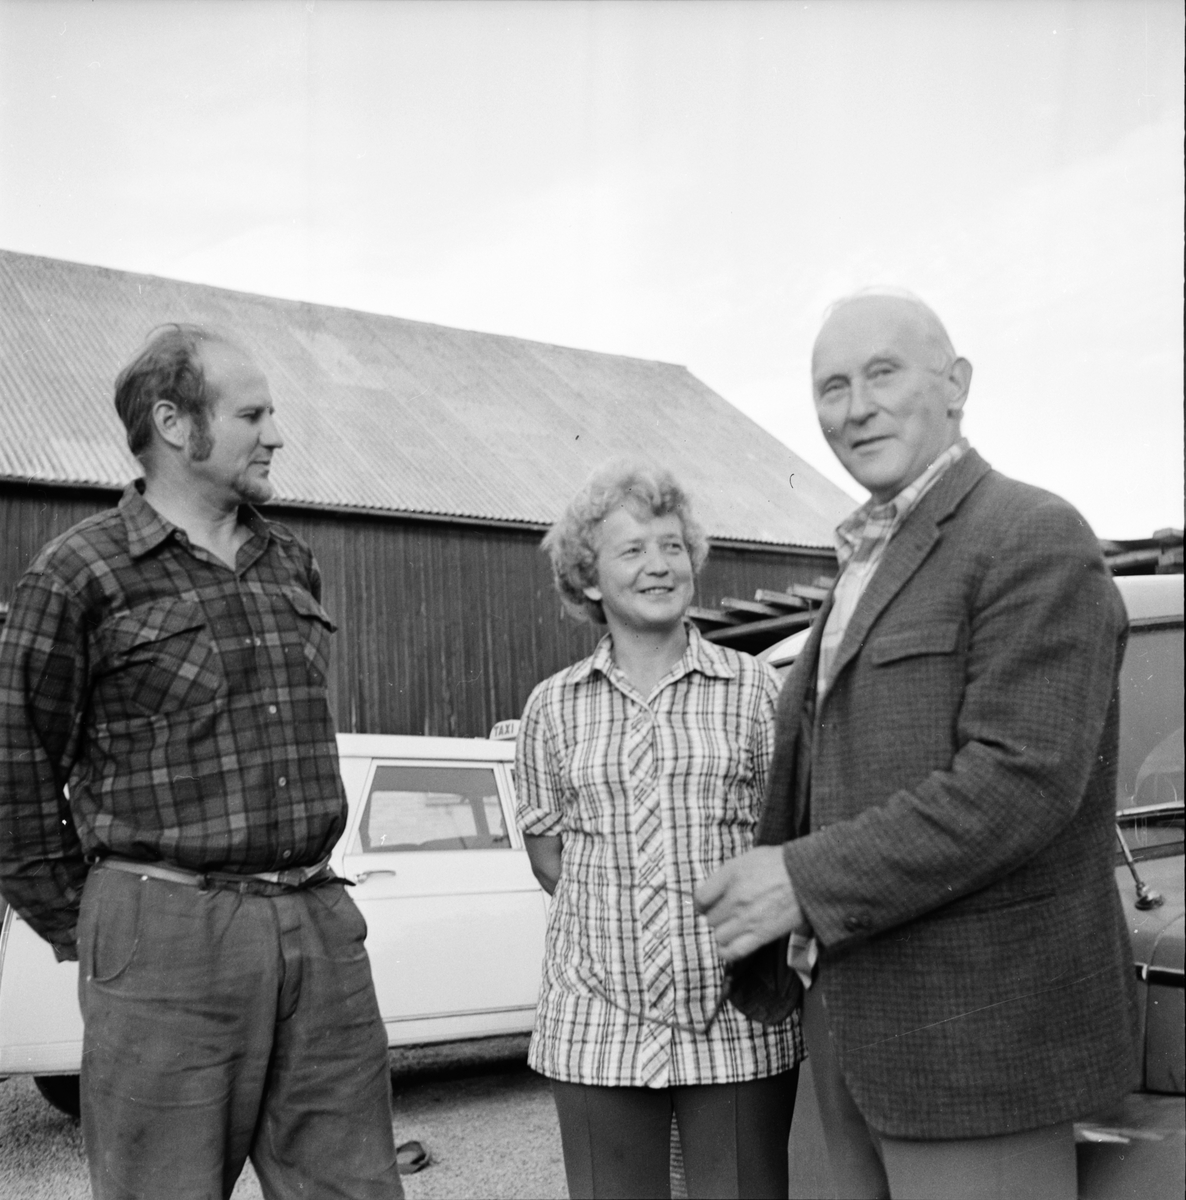 Iste. Vattenfrågan löses.
September 1972
Fv. Helge Frisk och Astrid Norfelt Iste, Olle Pettersson Änga Vallsta.